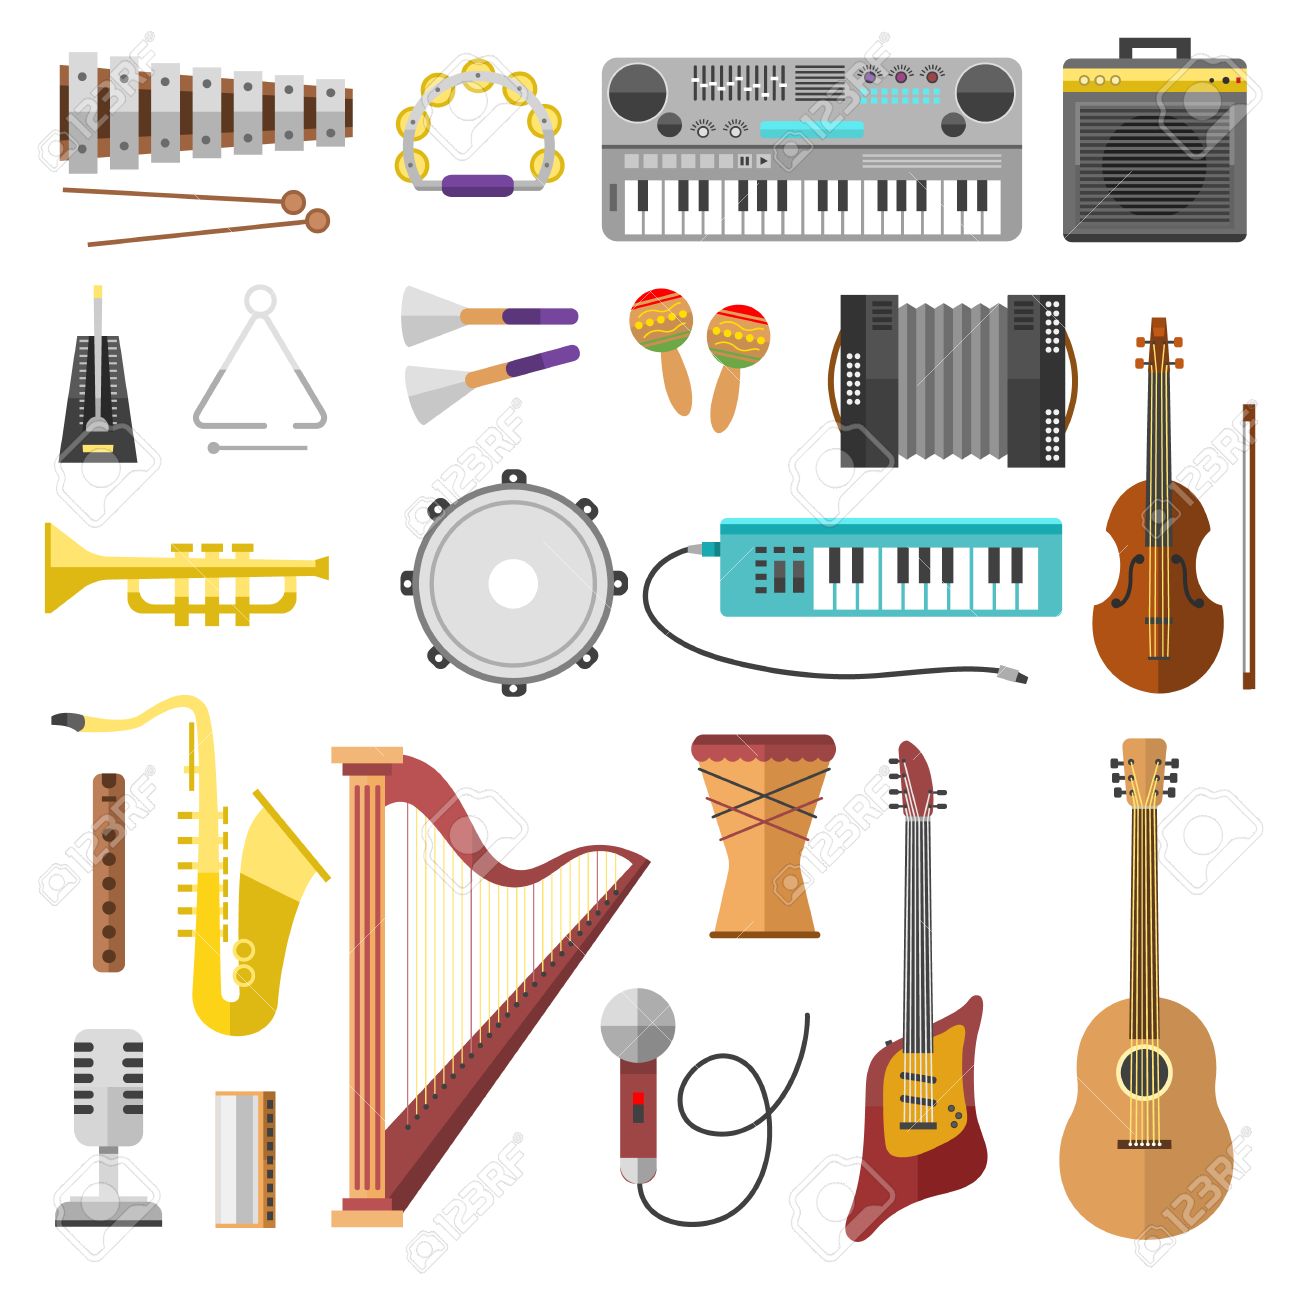 met1010 instruments quiz